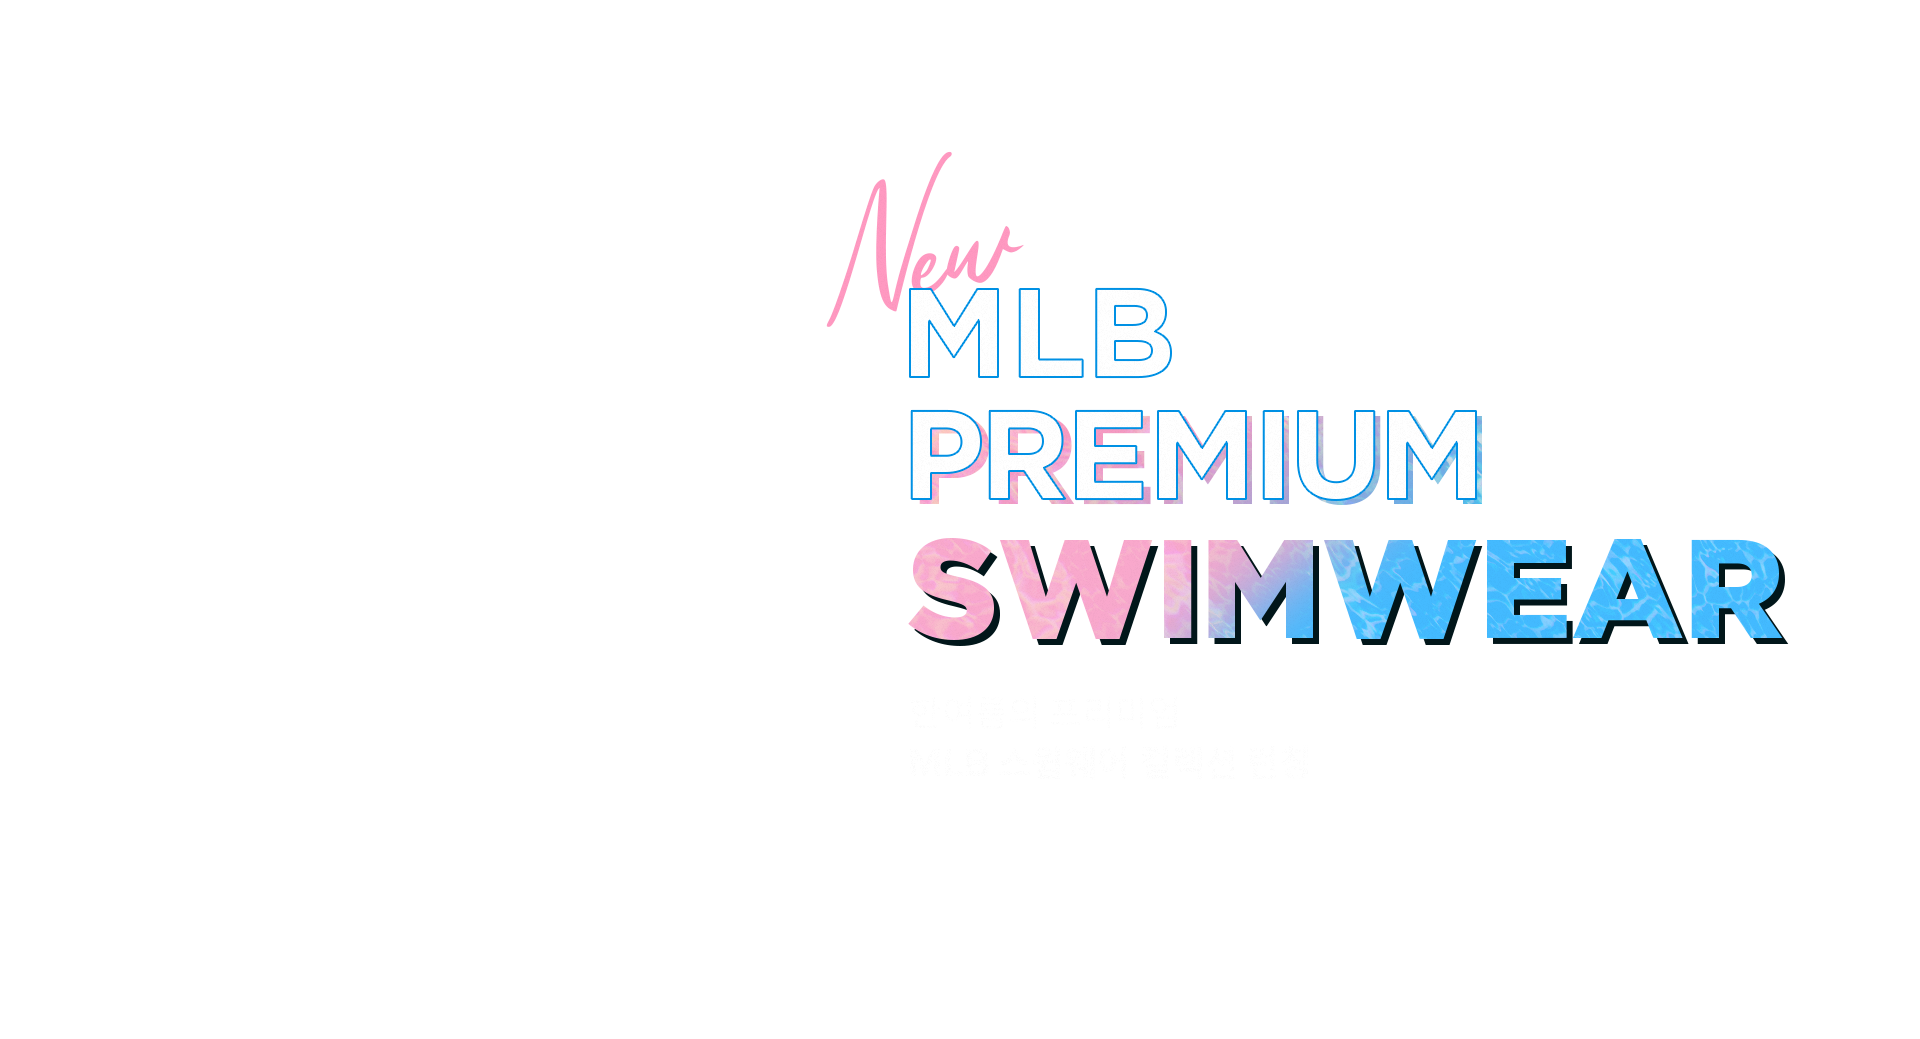 NEW MLB PREMIUM SWIMWEAR